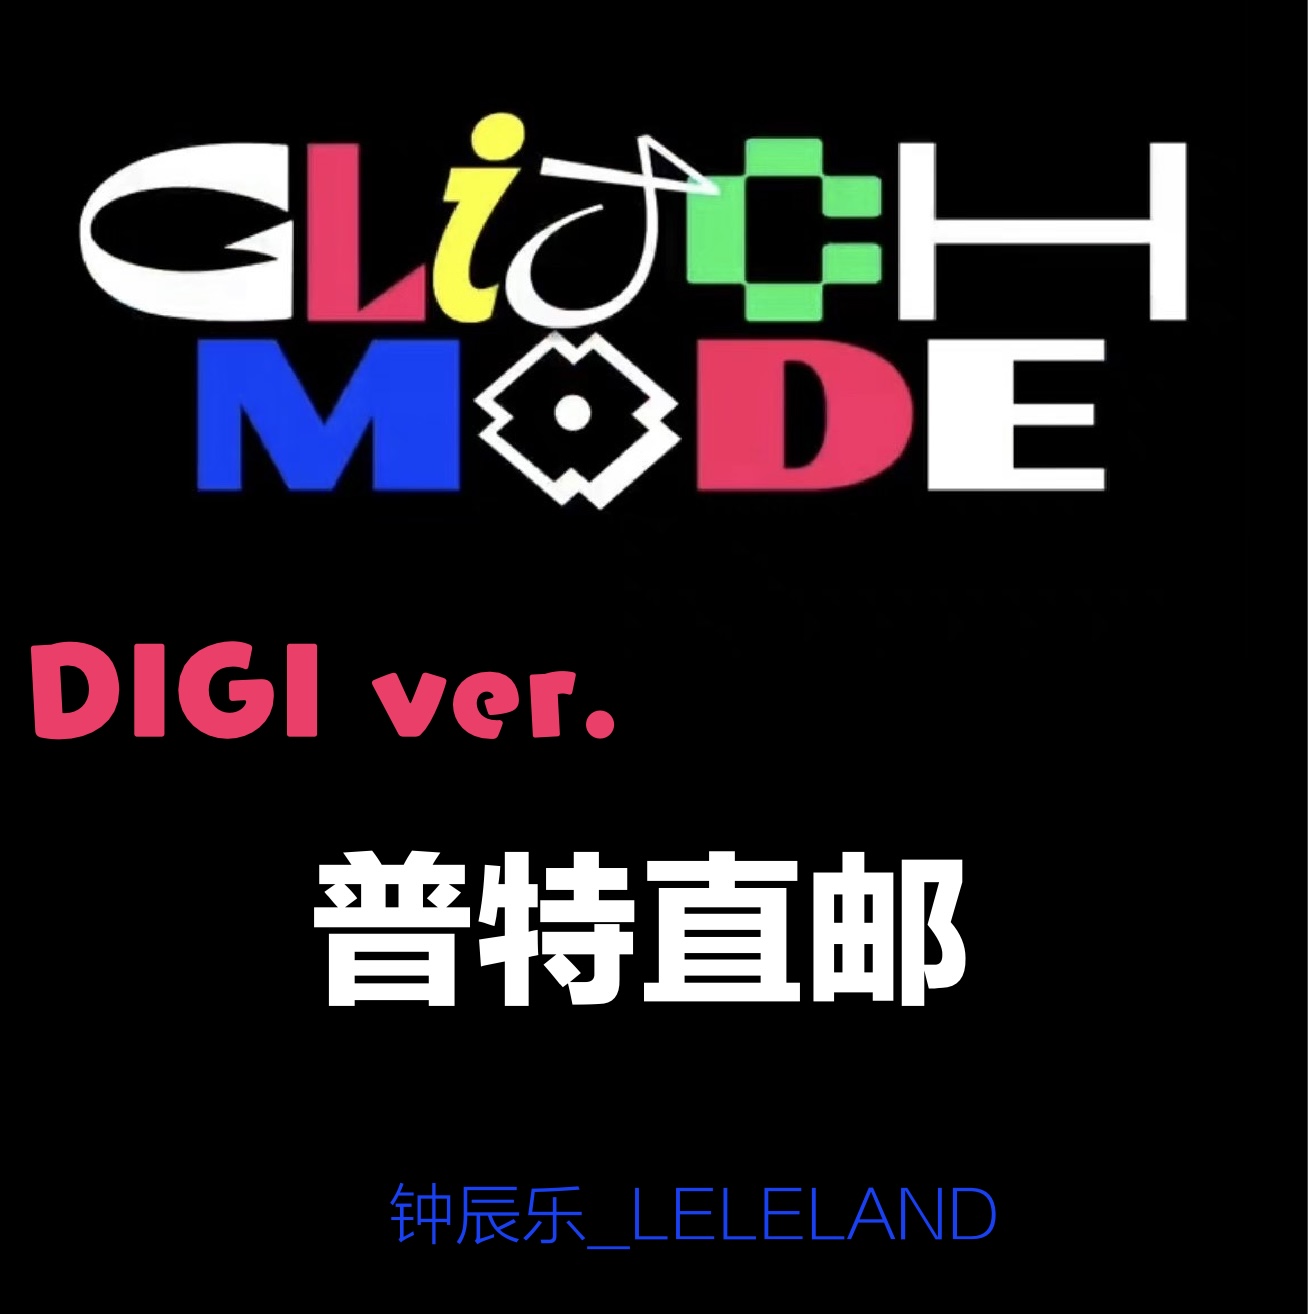 [全款 基础特典] NCT DREAM - 正规2辑 [Glitch Mode] (Digipack Ver.) (随机版本)_钟辰乐吧_ChenLeBar